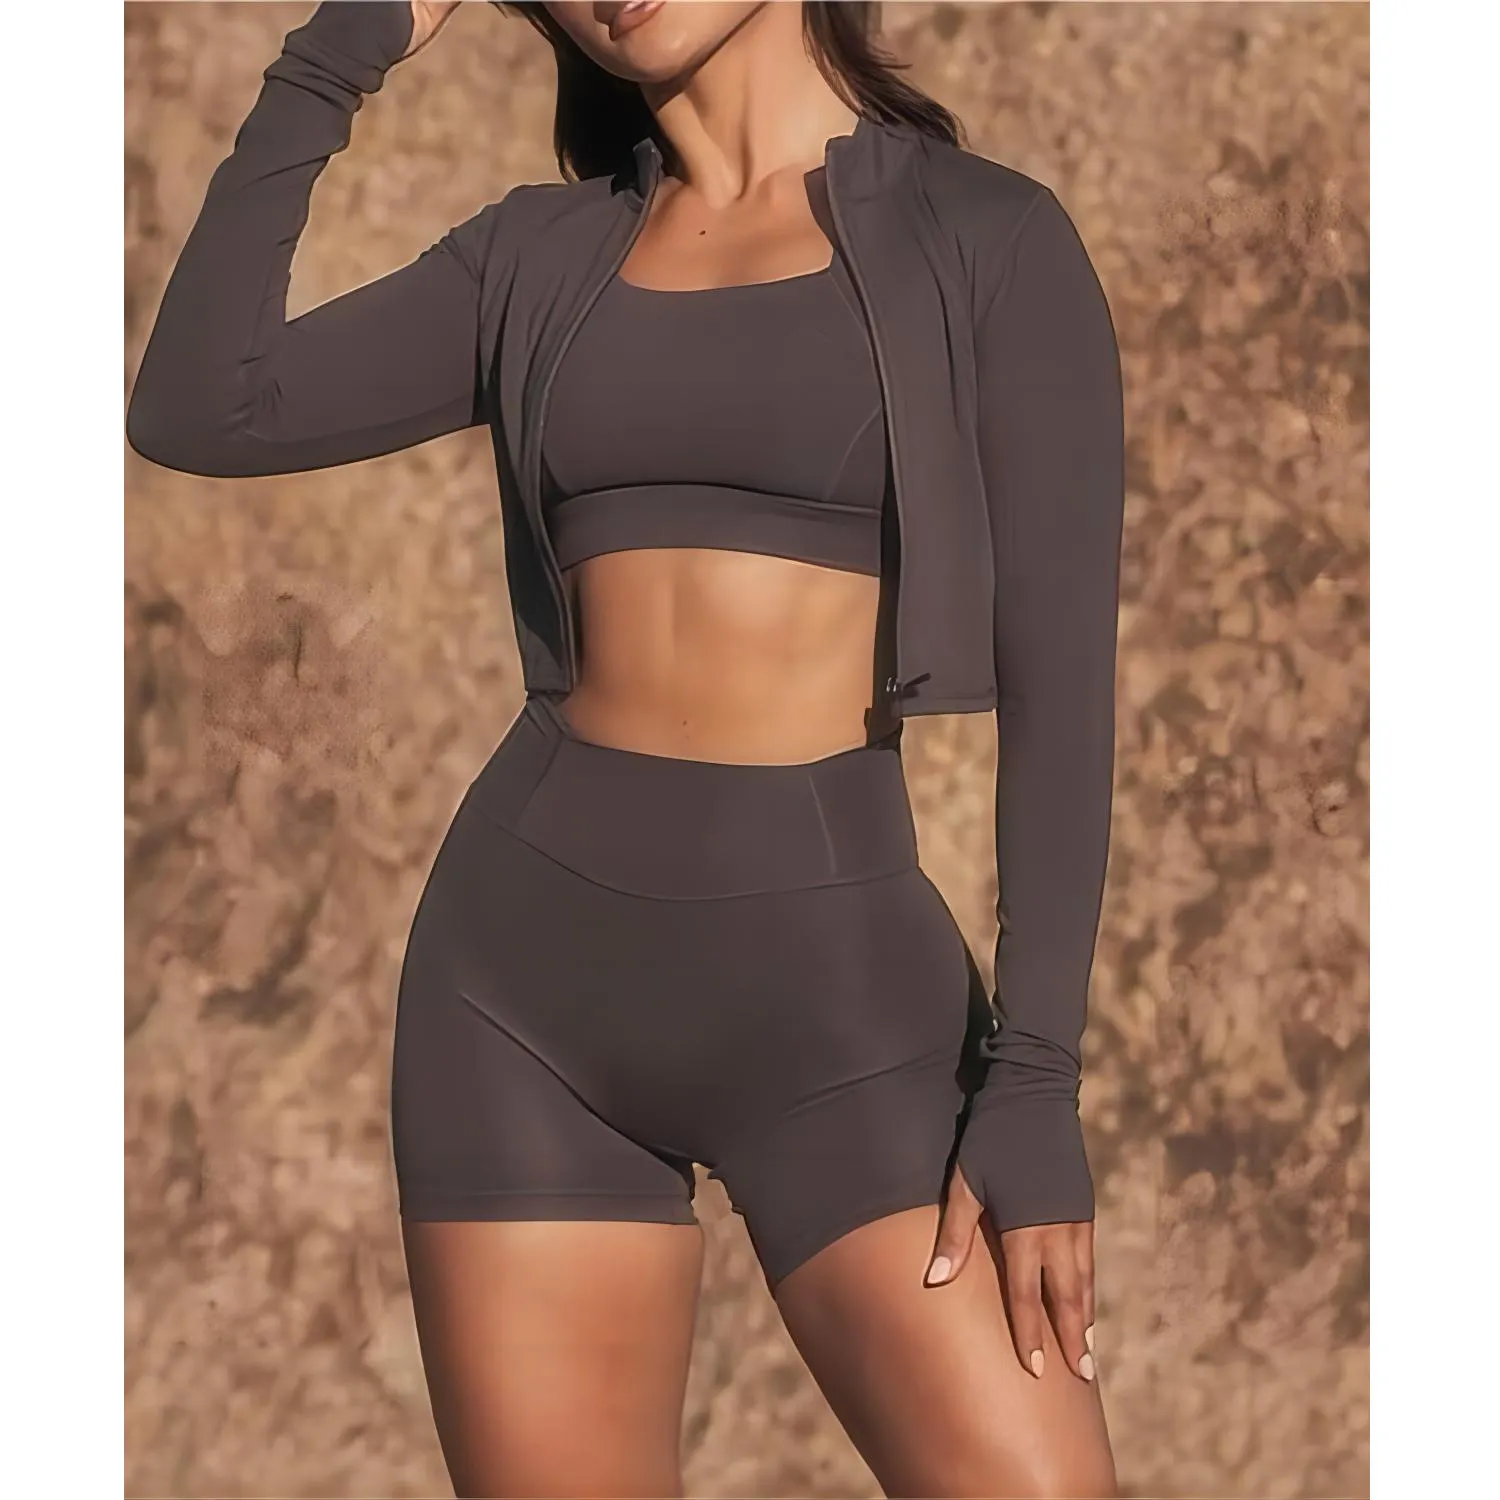 F230519 Benutzer definierte Frauen Outdoor Fitness 3-teilige Trainings anzüge Yoga-Sets Sport bekleidung Yoga Crop Tops Zip Up Jacke Shorts mit hoher Taille